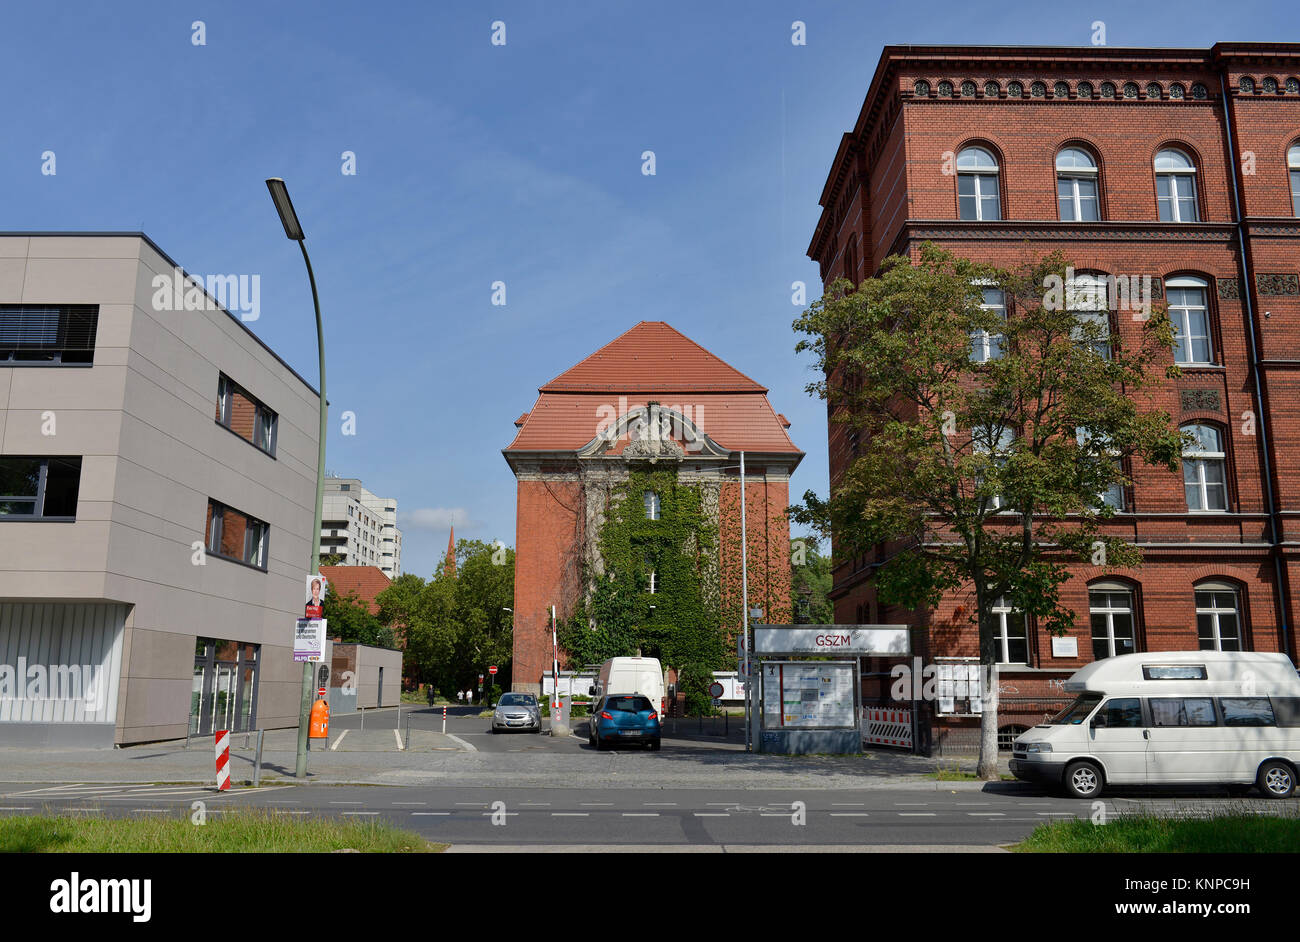 Centre de santé et centre social de Moabit (GSZM), Bahnhofstrasse, Moabit, milieu, Berlin, Allemagne, Maler- und Sozialzentrum Moabit (GSZM), Mitte, D Banque D'Images